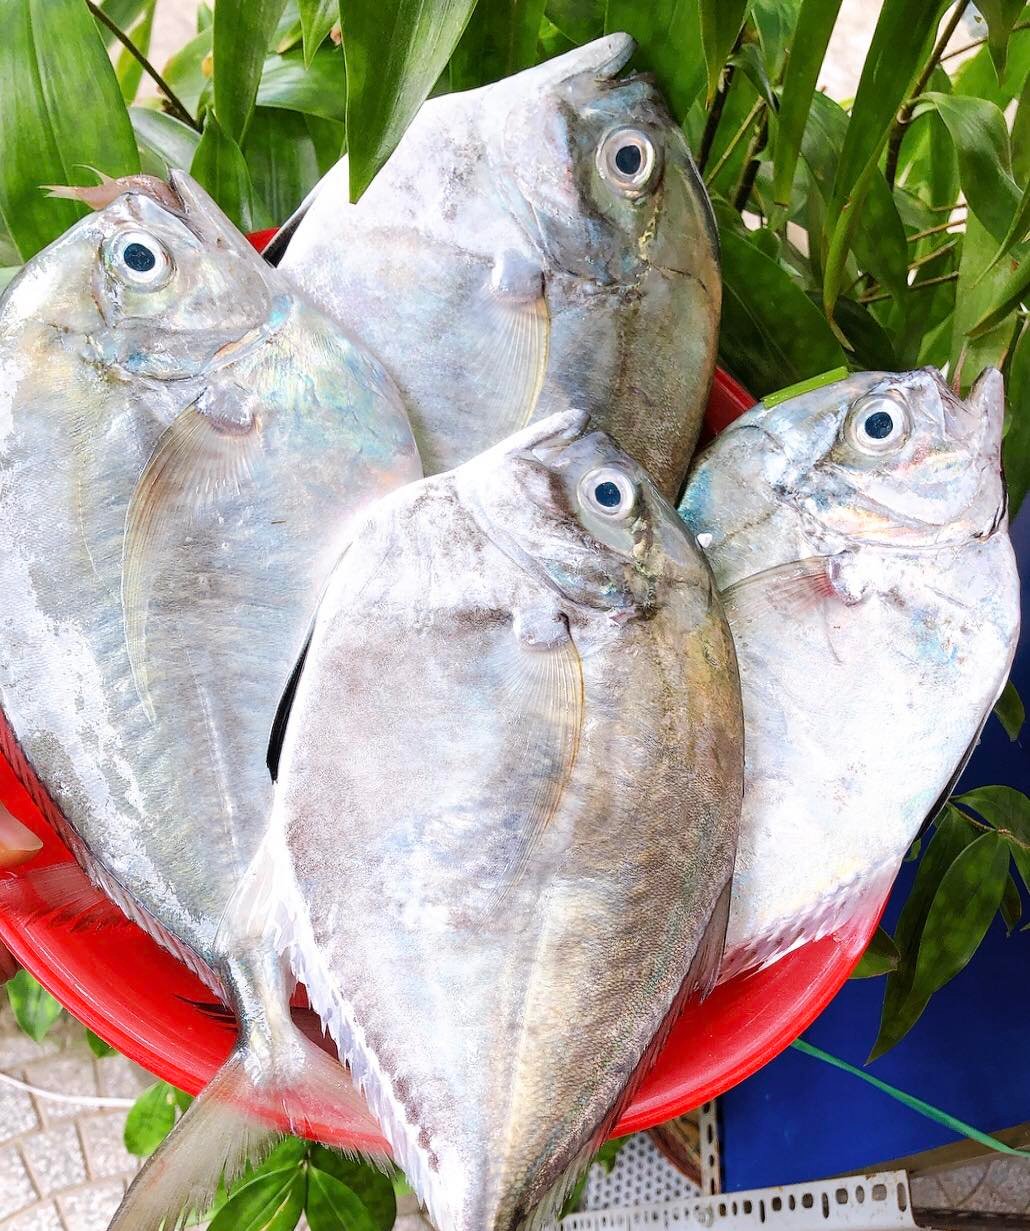 Cá từ bi ở biển Bình Thuận là cá gì mà nổi tiếng ngon, lạ, quý hiếm, ăn vào sẽ từ bi?- Ảnh 1.